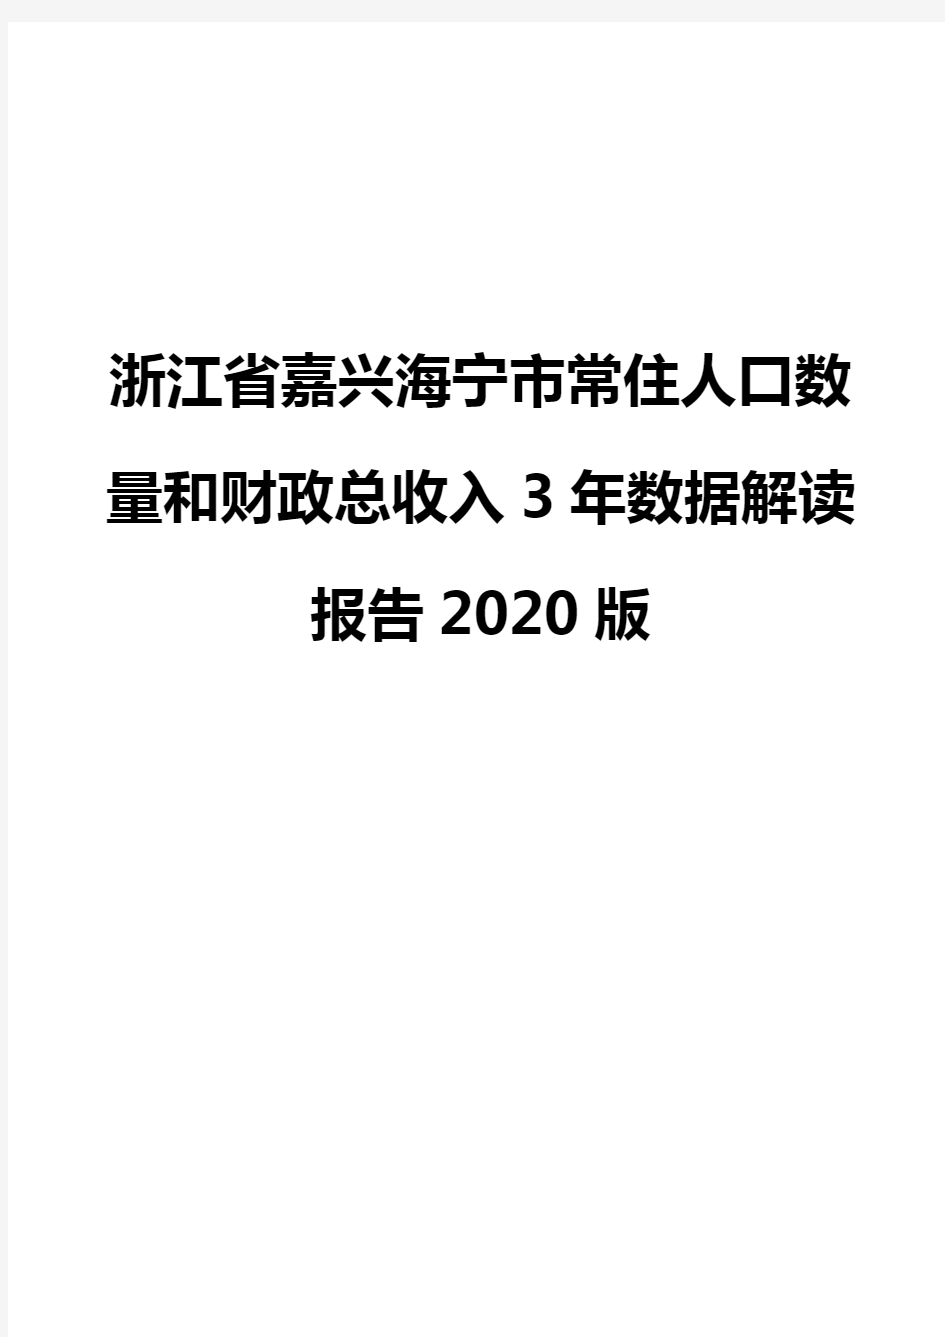 浙江省嘉兴海宁市常住人口数量和财政总收入3年数据解读报告2020版